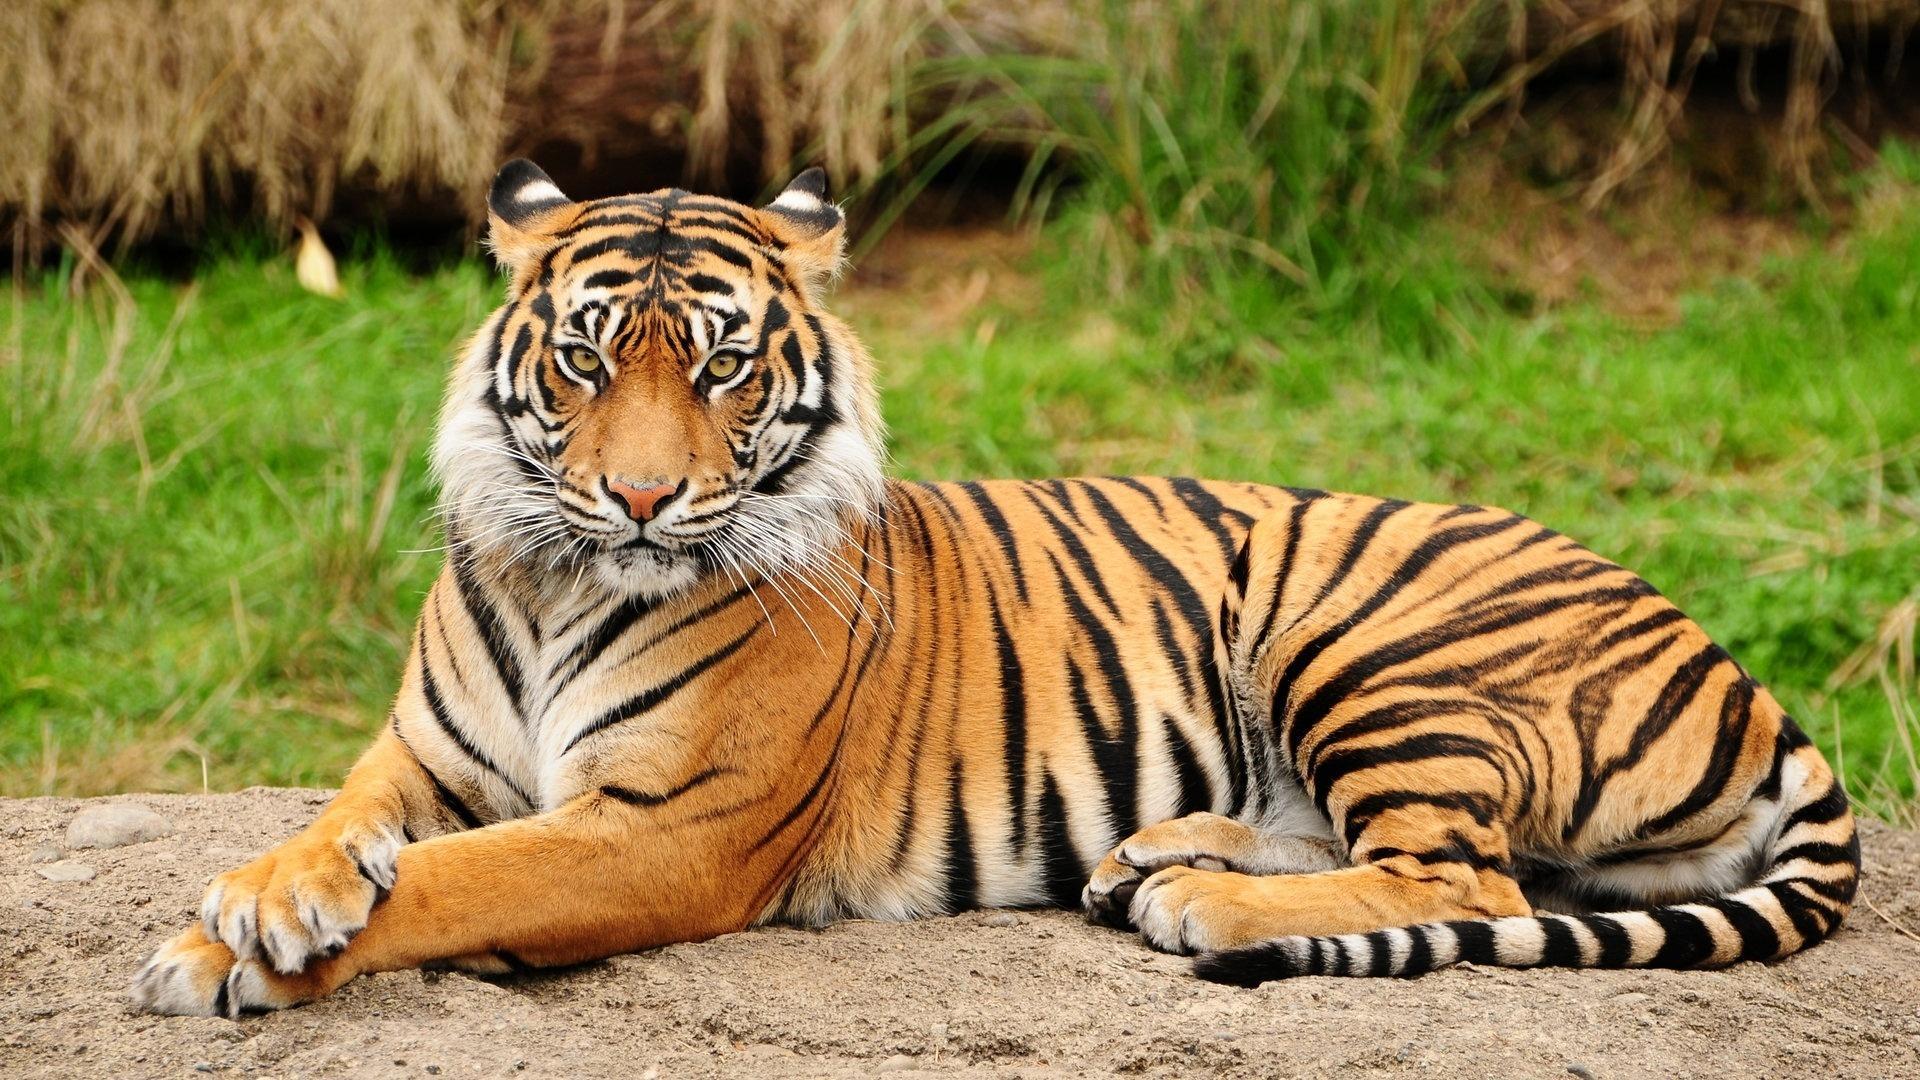 A Lovely Tiger HD desktop wallpaper, Widescreen, High Definition